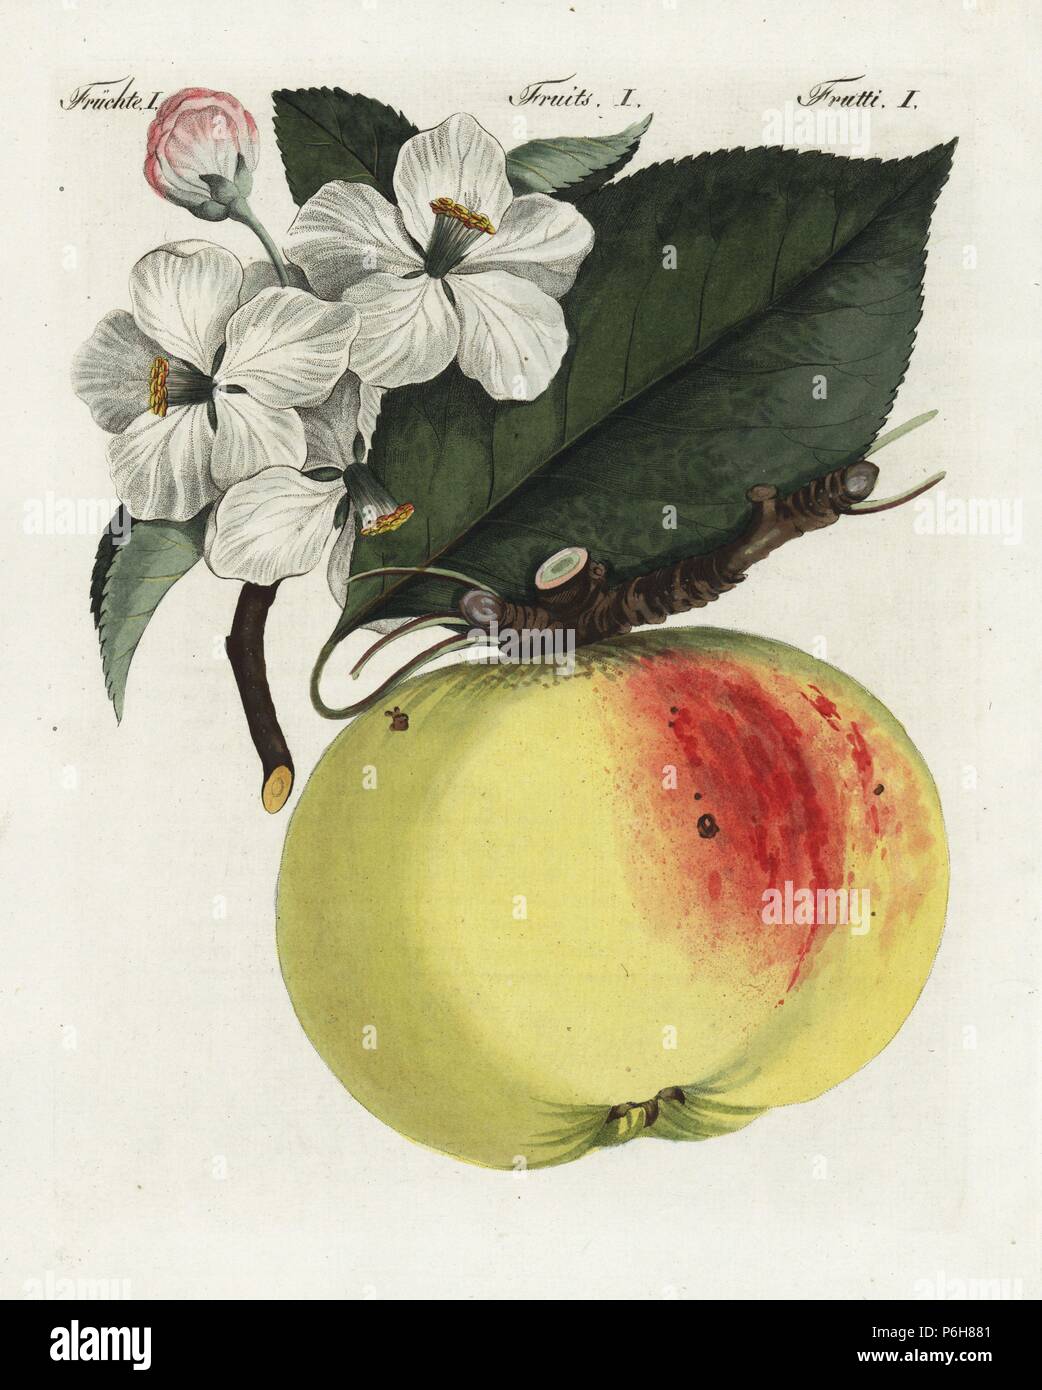 Apple Blossom, Géant, feuilles et fruits, Malus domestica. Coloriée à la  gravure sur cuivre de Bertuch's 'Bilderbuch fur Kinder" (Livre d'images  pour les enfants), Weimar, 1805. Johann Friedrich Bertuch (1747-1822) était  un